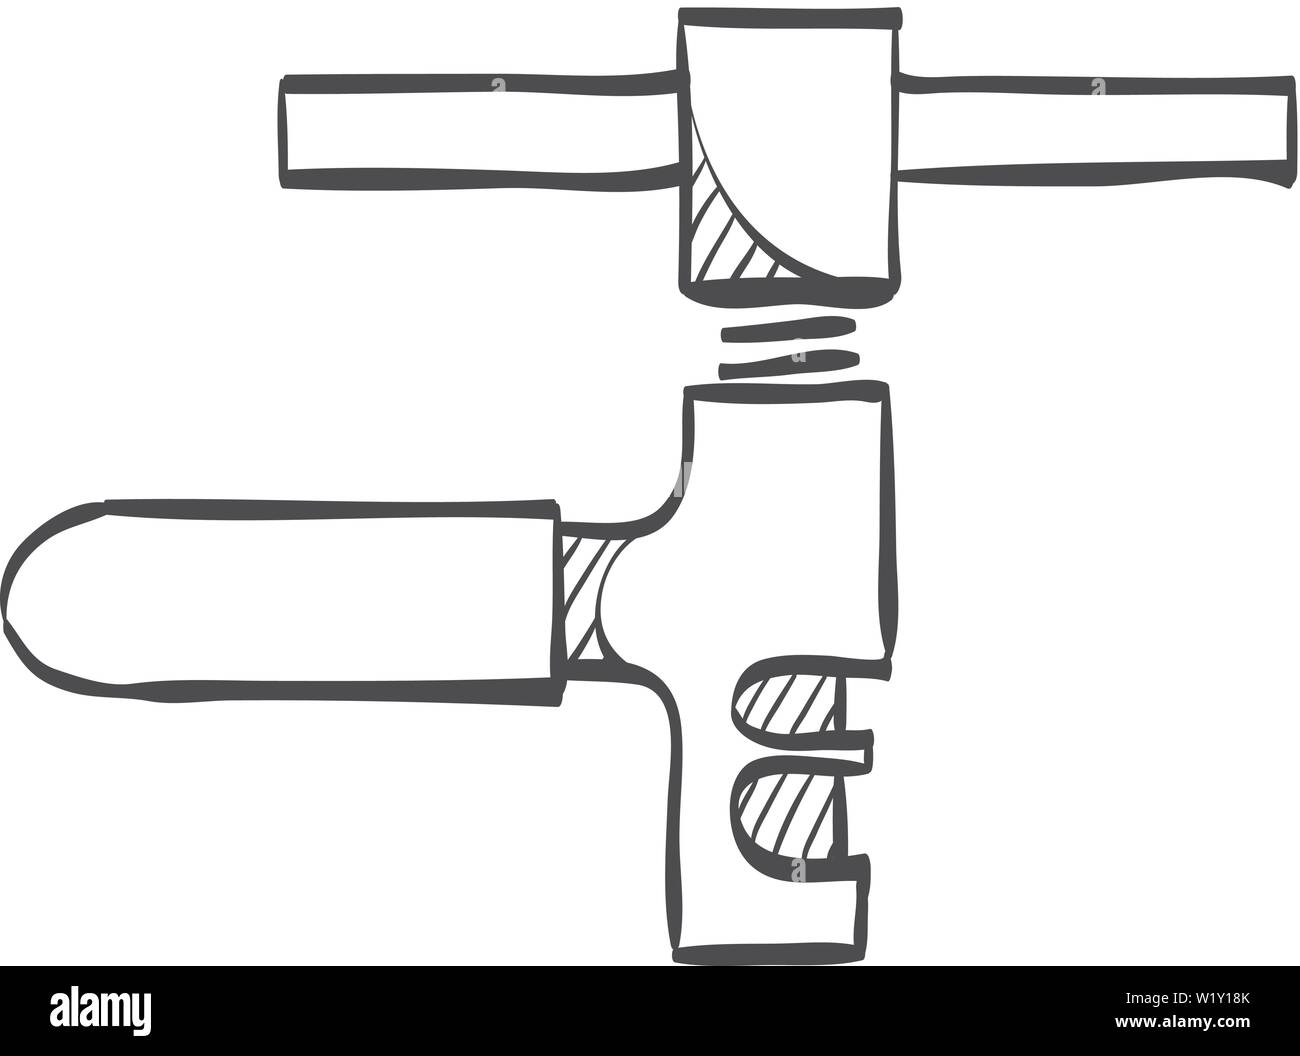 Kette Symbol in doodle Skizze Linien. Transport sport Ersatzteile Werkzeug  entfernen Reparatur Wartung Werkzeug Kette melden Sie schneiden  Stock-Vektorgrafik - Alamy